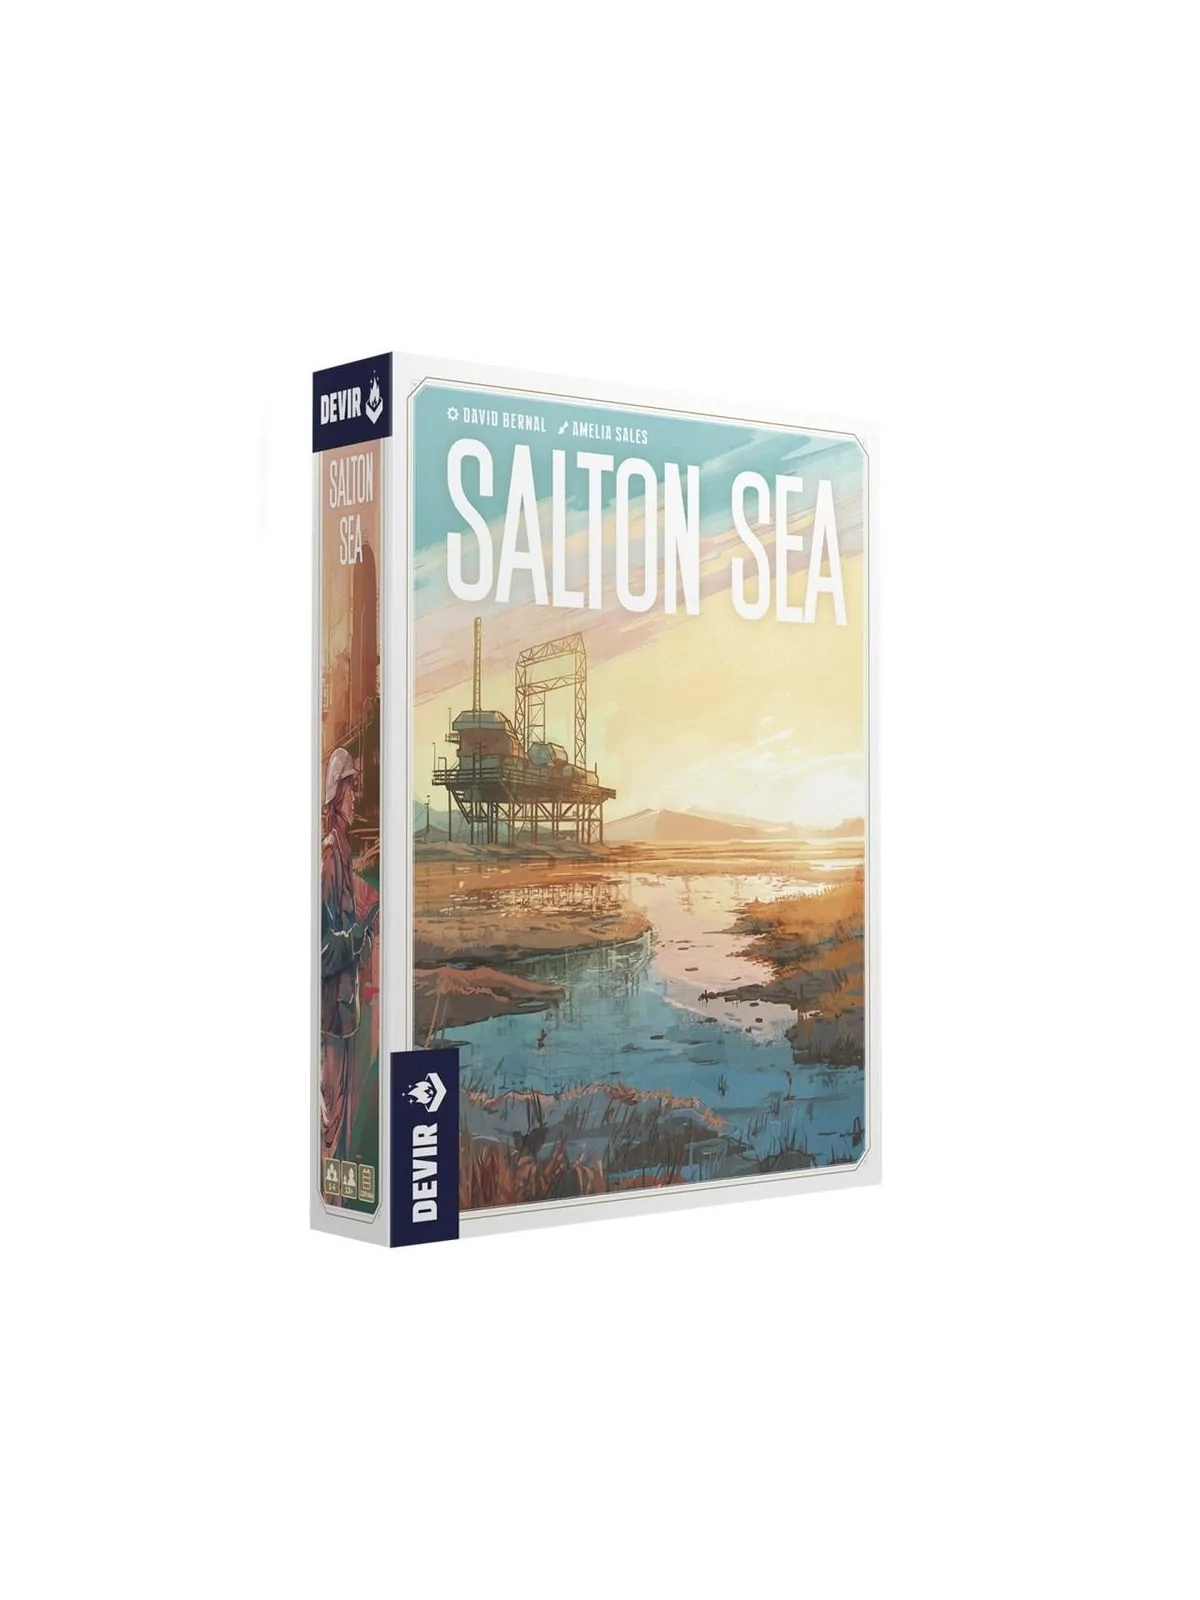 Comprar Salton Sea barato al mejor precio 25,49 € de Devir